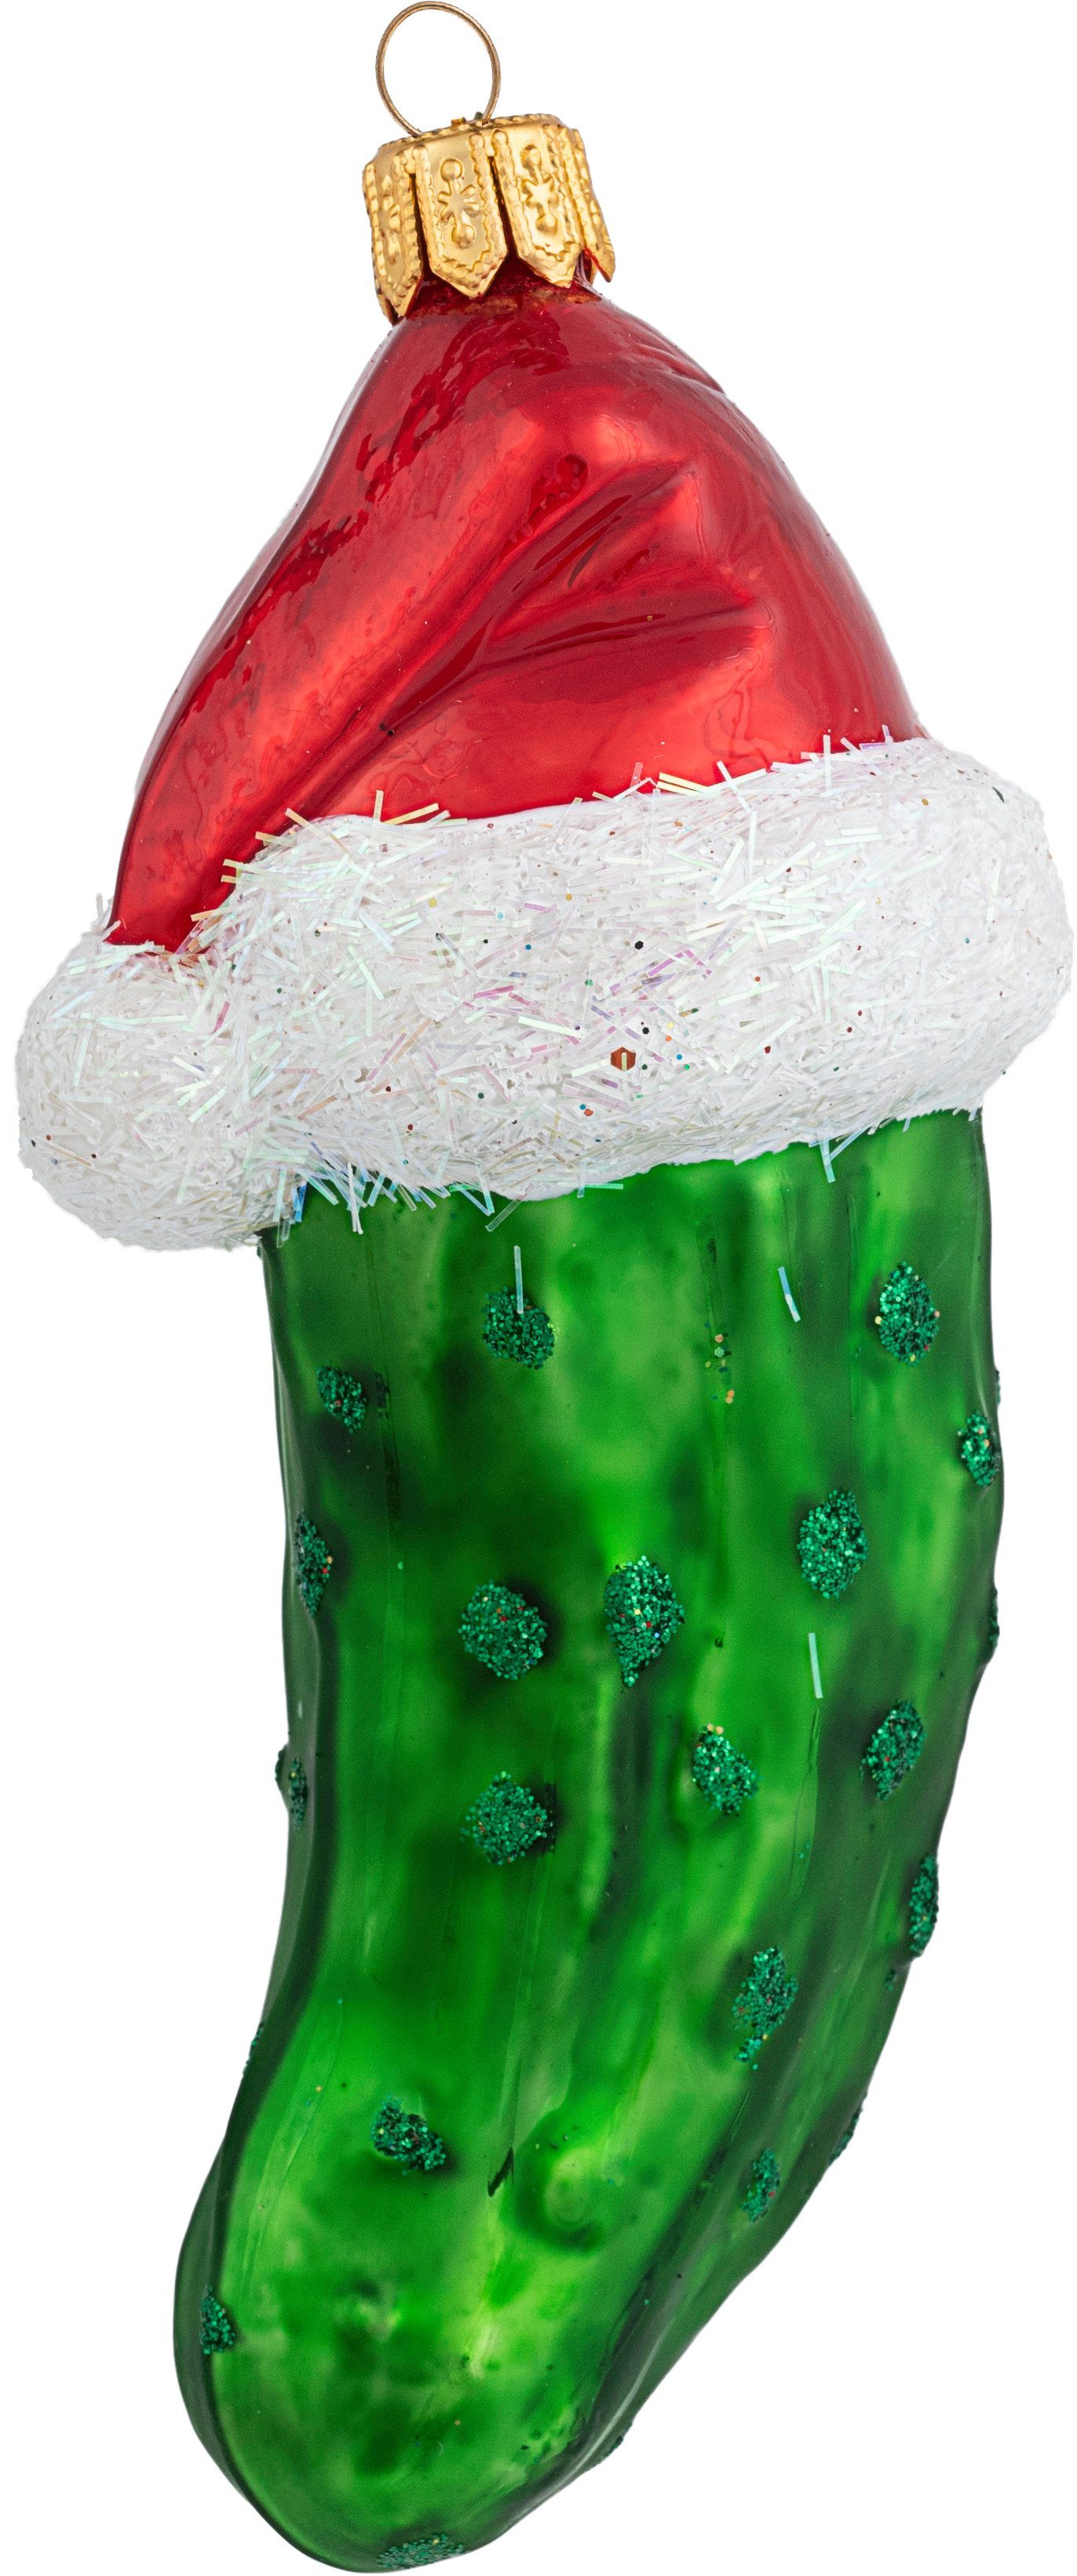 10cm Christbaumschmuck grün Mütze mit Weihnachtsgurke Christbaumschmuck, Glas IMPULS